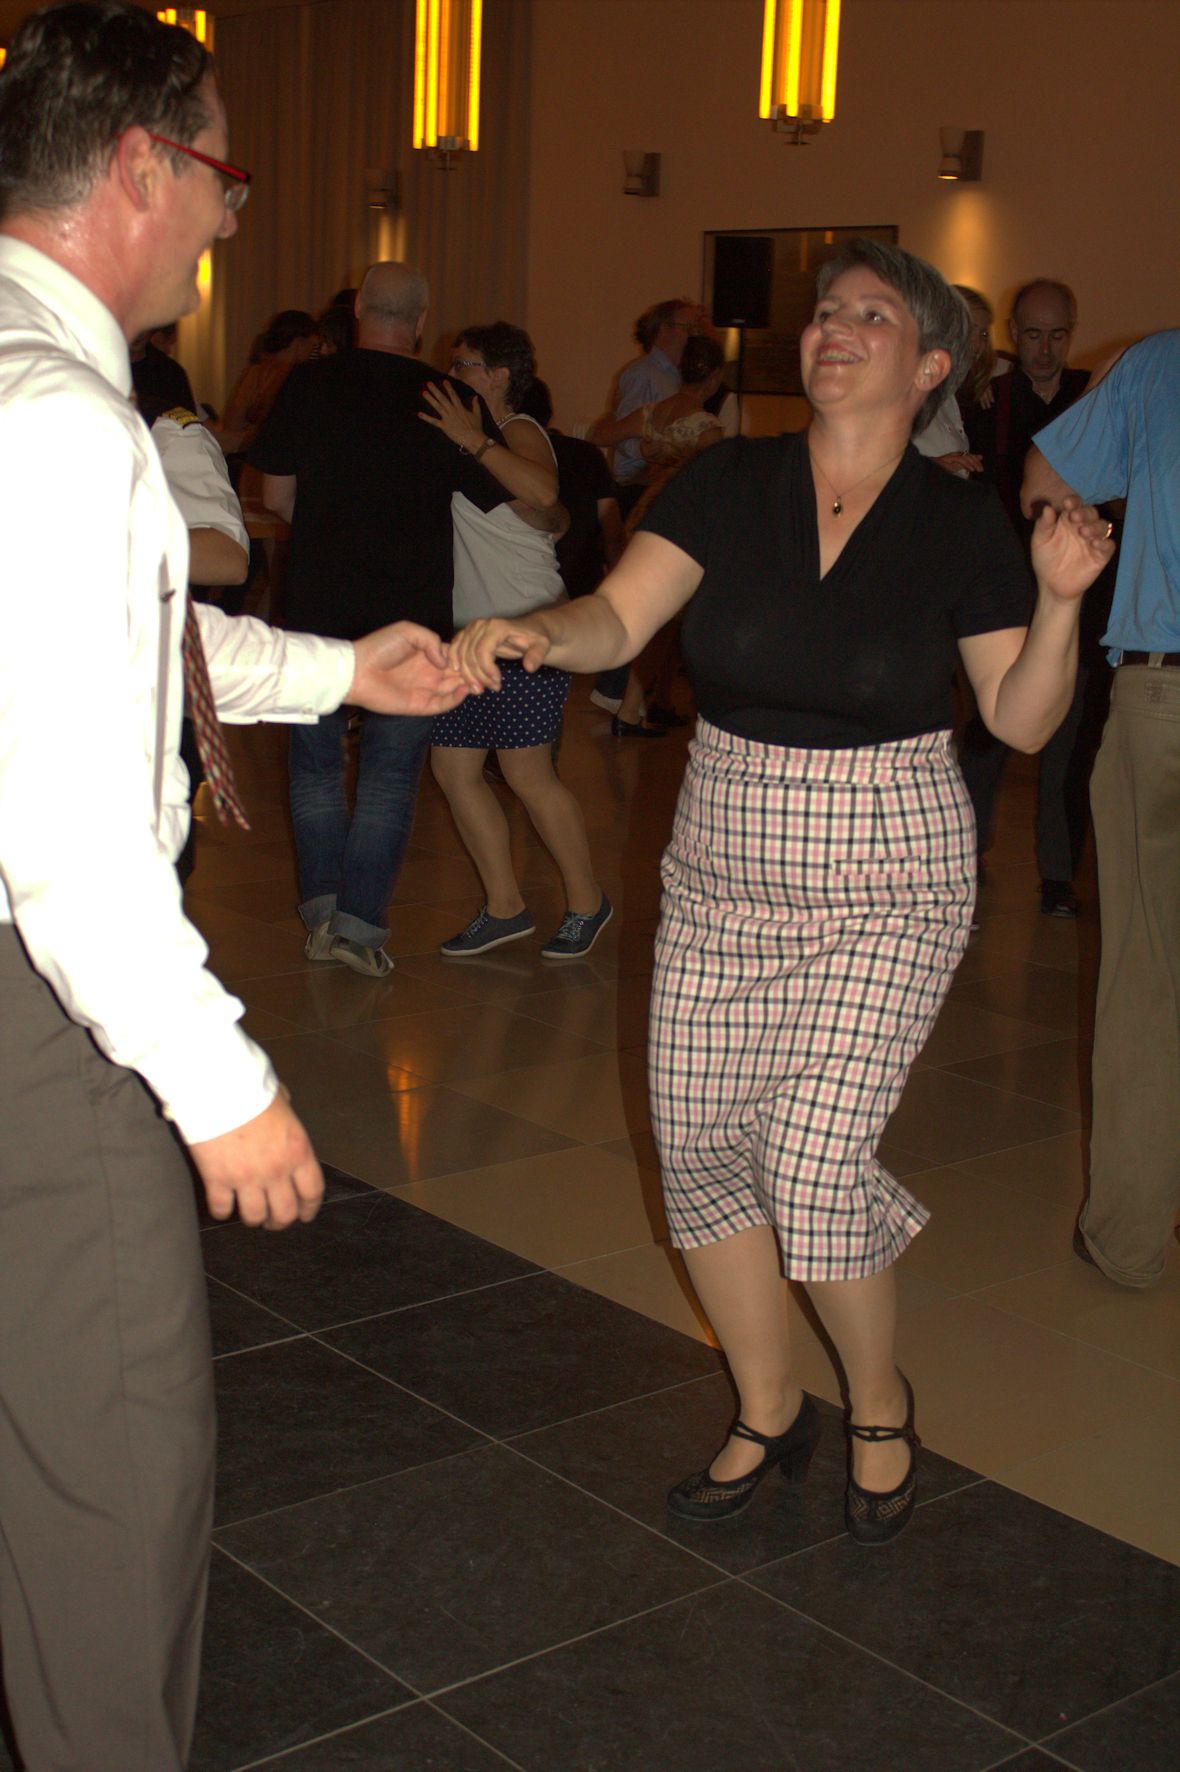 Fotografie einer Tanzfläche. Im Vordergrund sieht man eine Frau & einen Mann, die gemeinsam Lindy Hop tanzen.